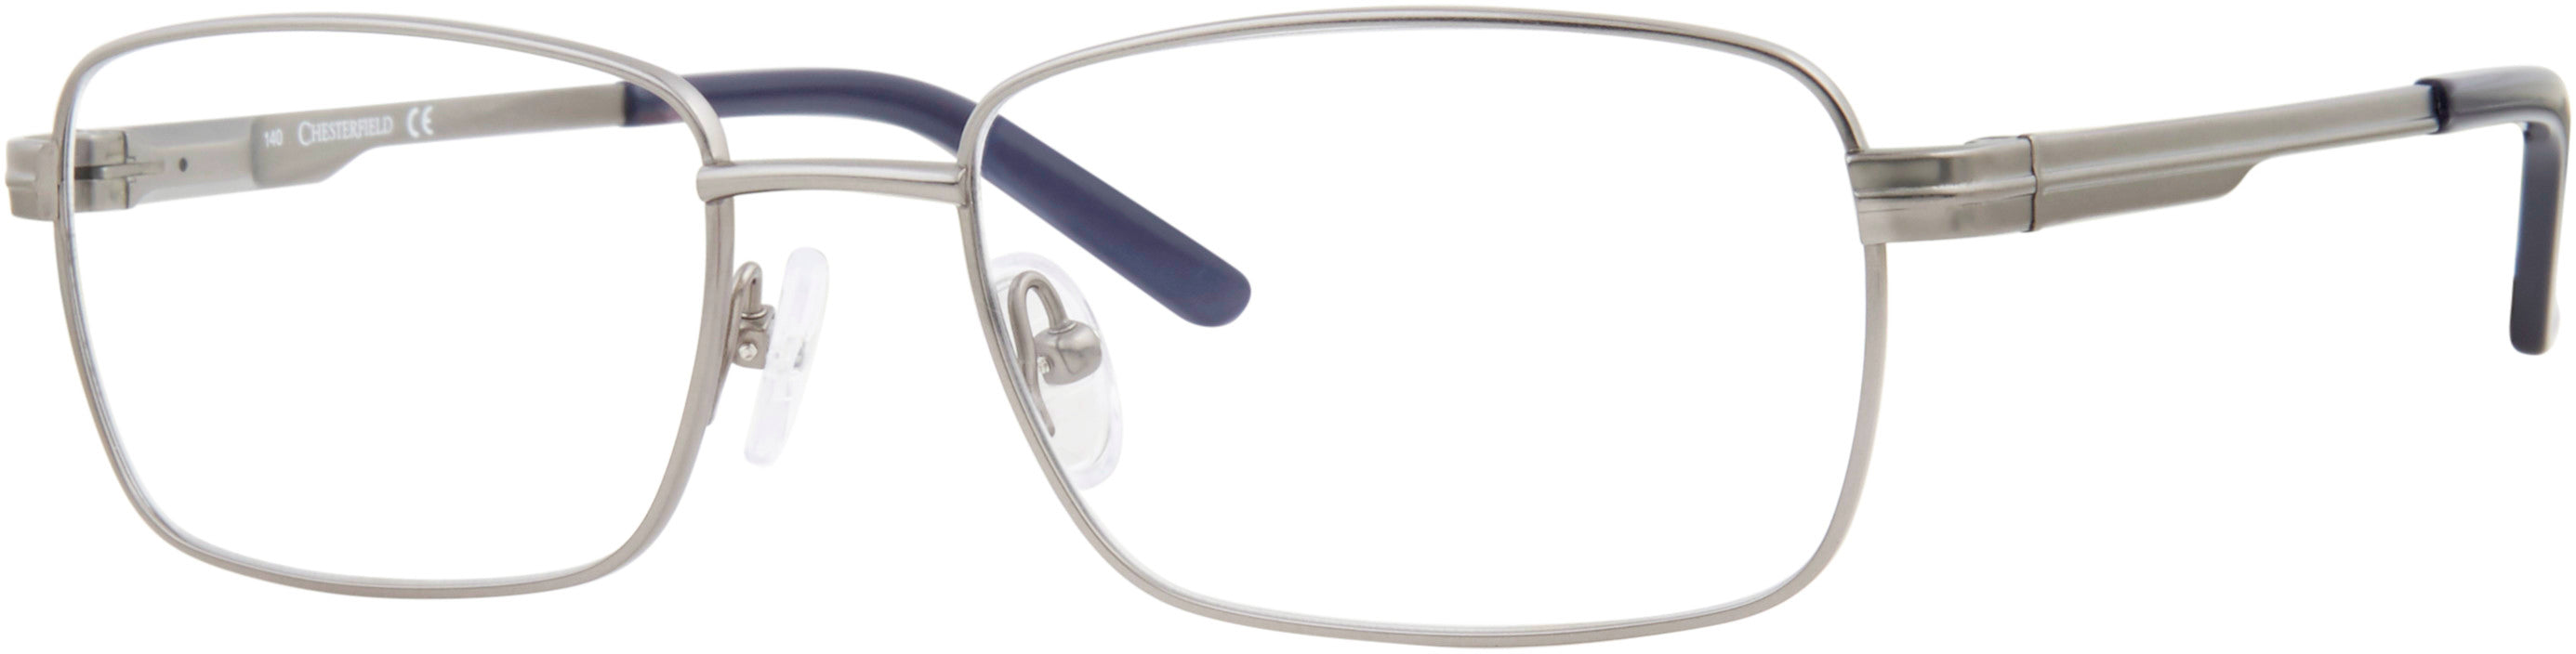  Chesterfield 887/T Rectangular Eyeglasses 0FRE-0FRE  Matte Gray (00 Demo Lens)